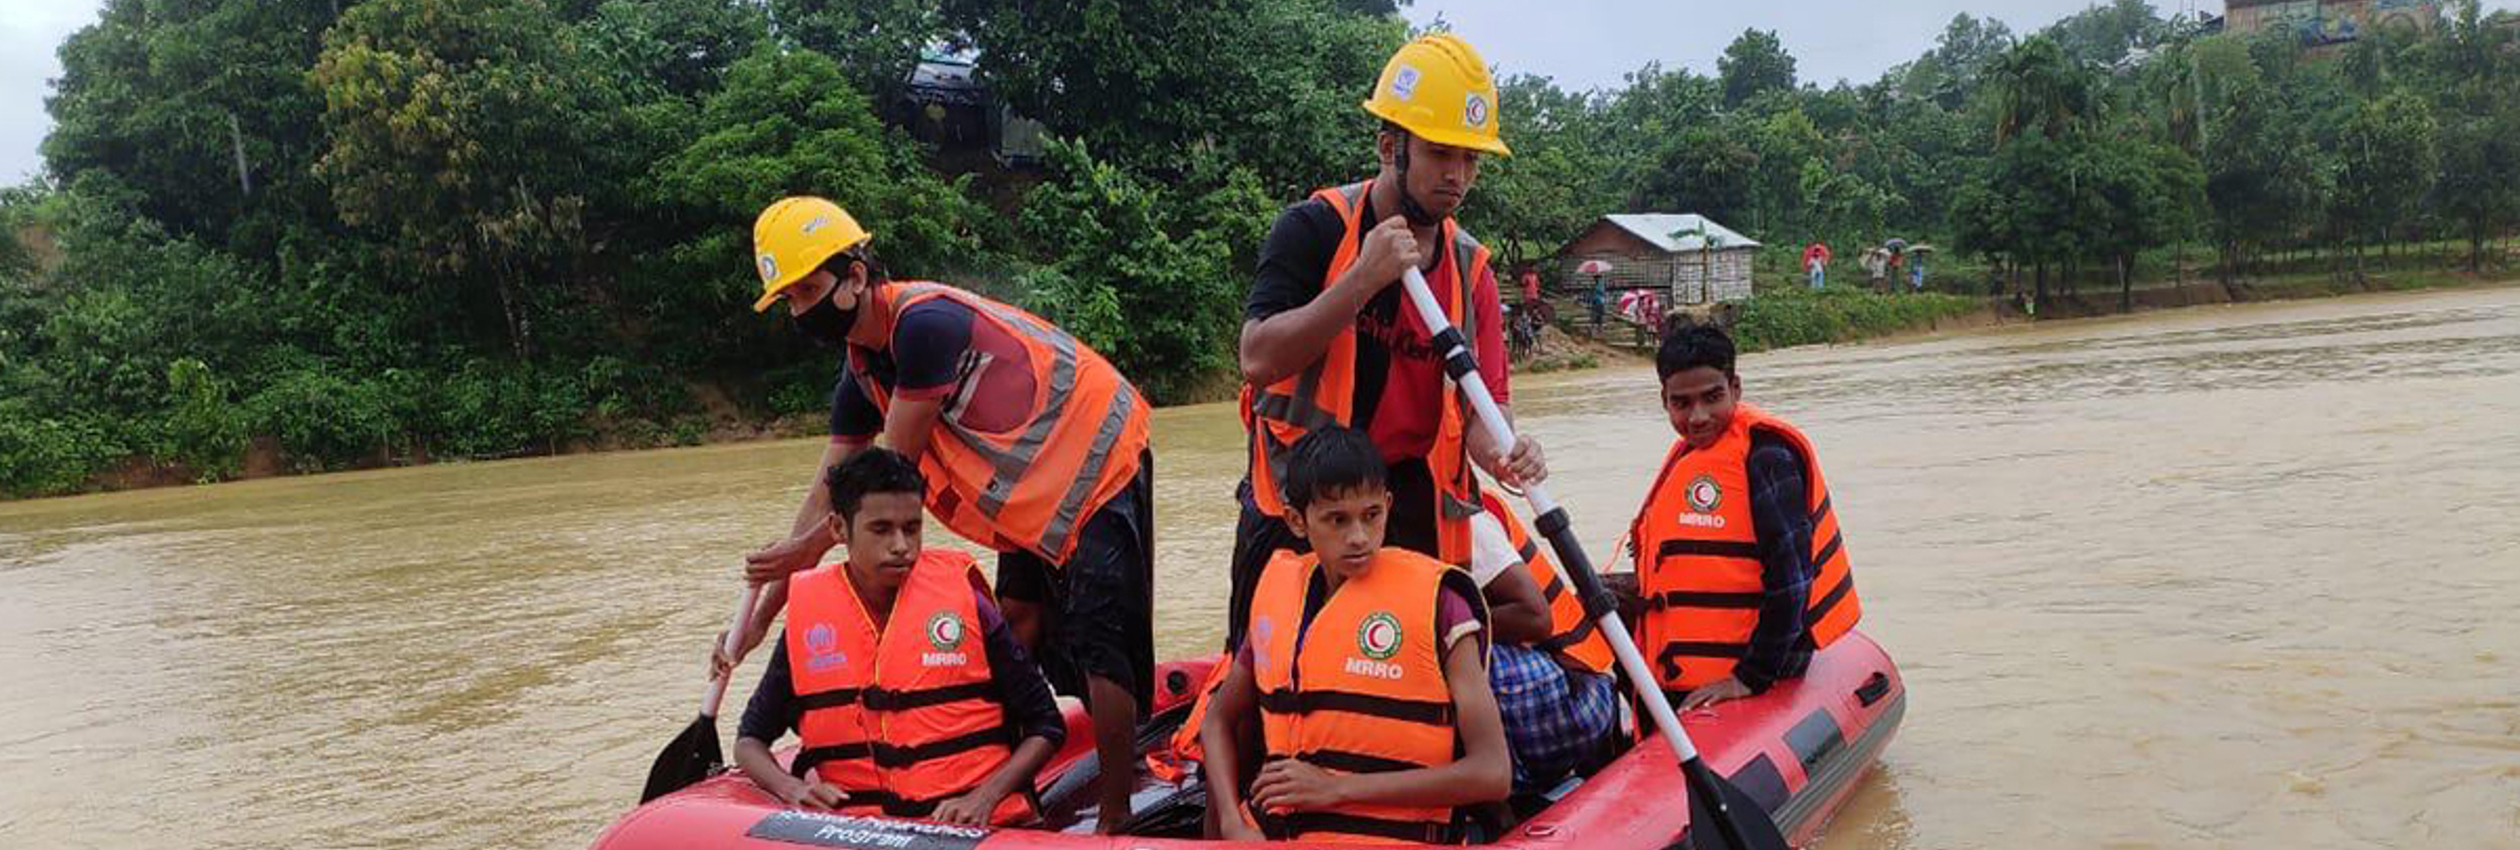 Devastating floods and landslides hit Rohingya camps in Bangladesh